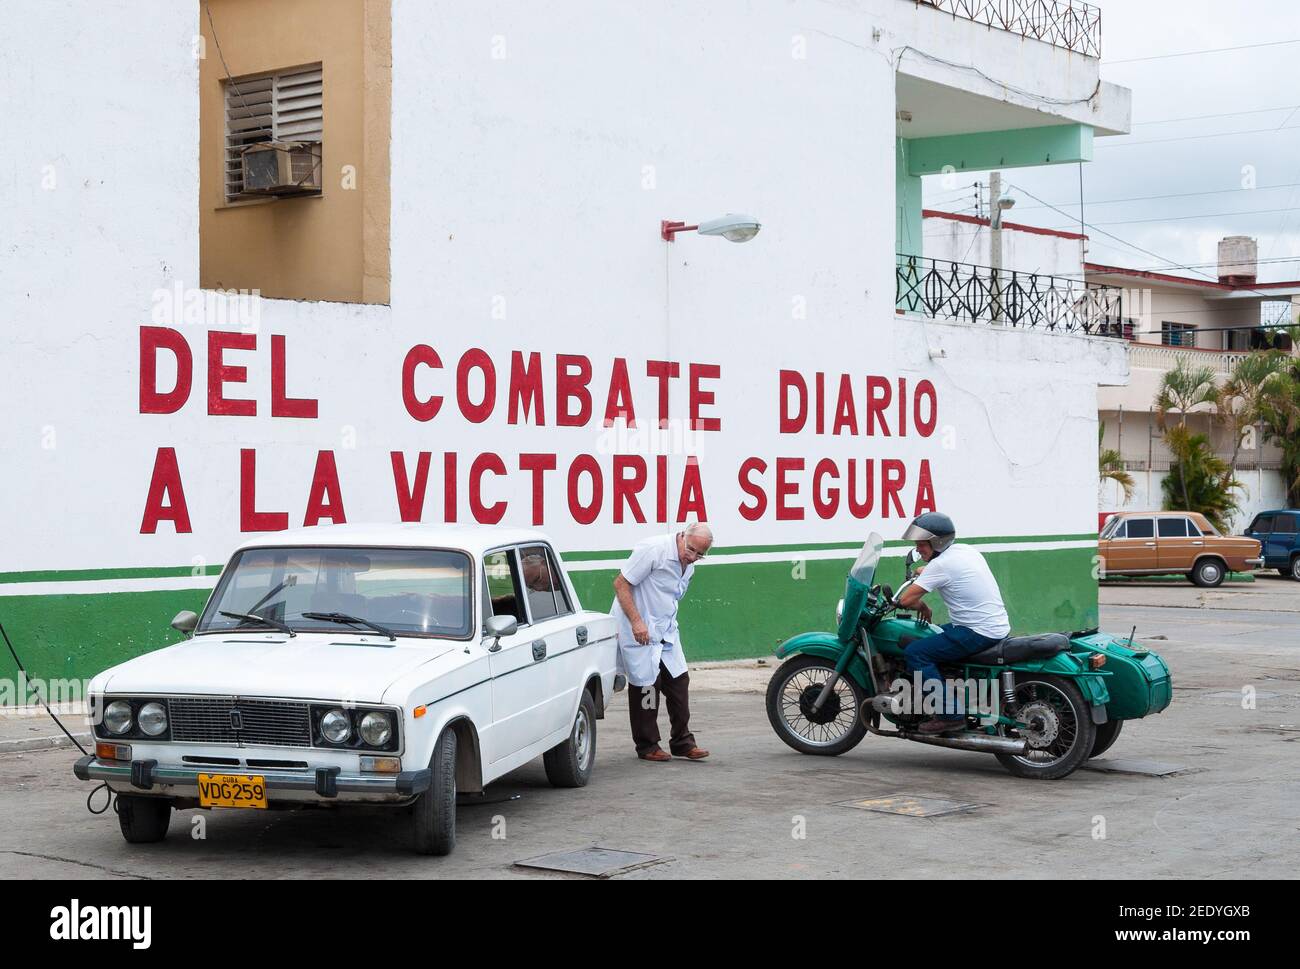 Un medico che gonfia pneumatici o ruote Lada. Due uomini vedono la vecchia auto sovietica e le moto nelle strade della città cubana. L'inscribpio Foto Stock